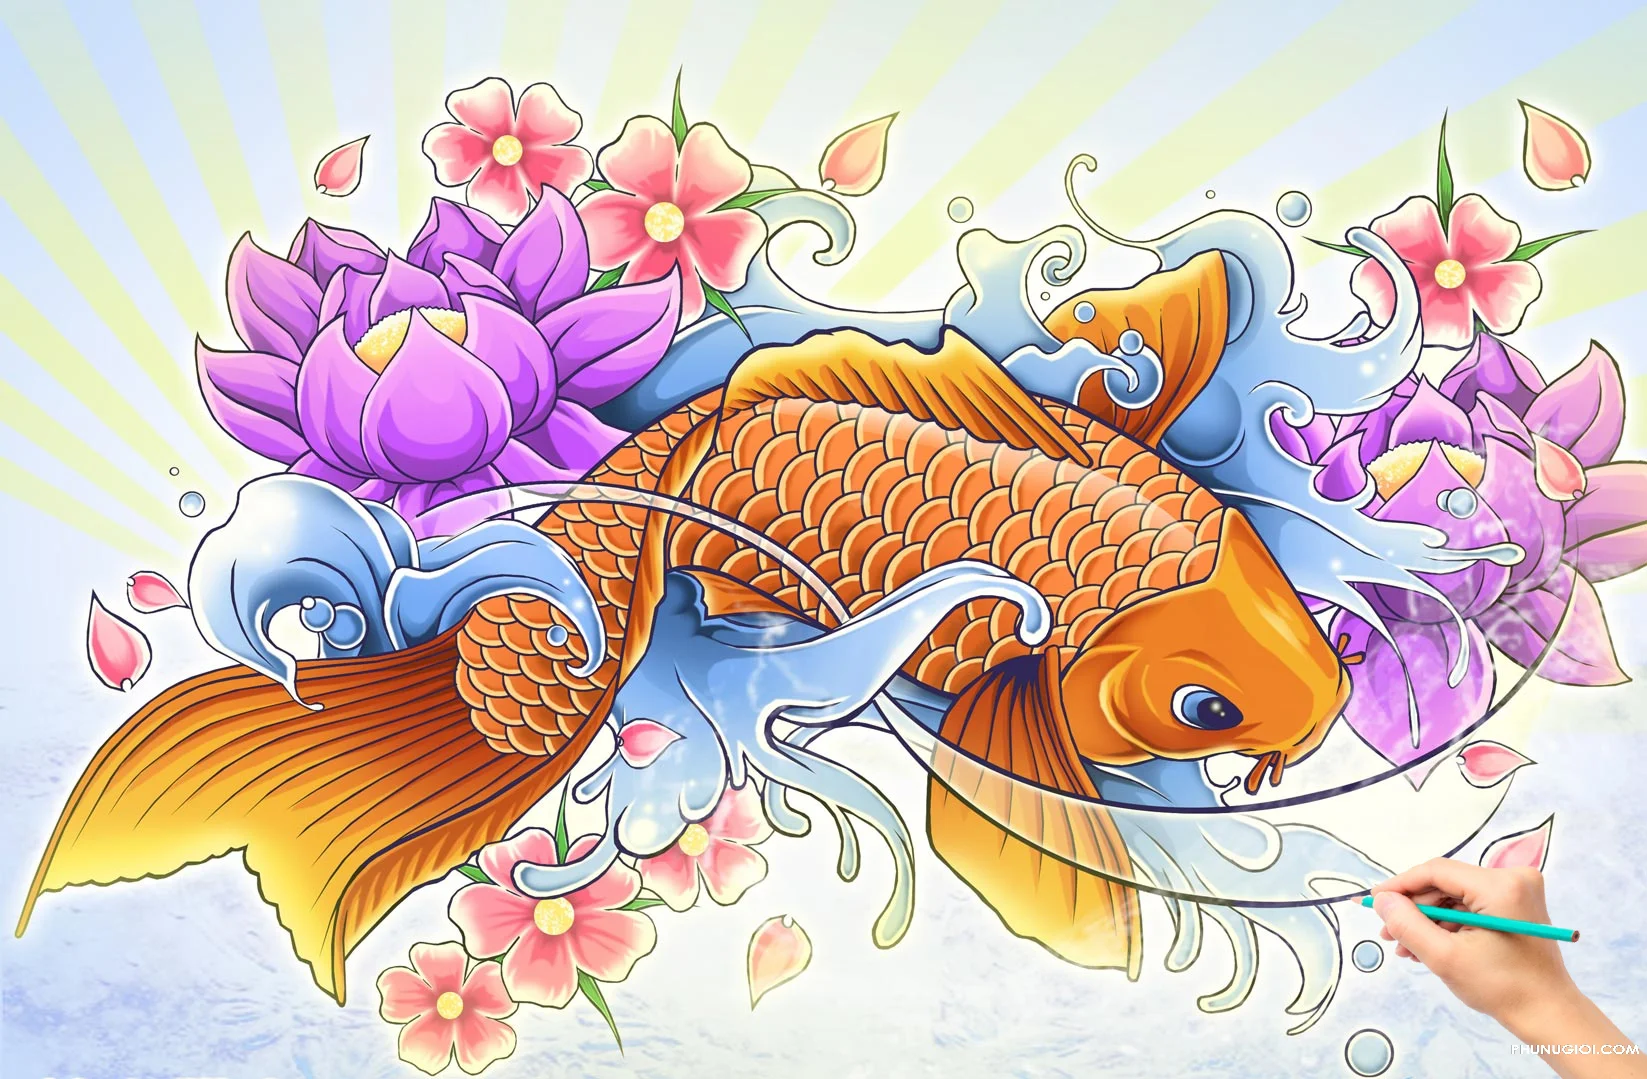 Những hình vẽ cá Chép, cách vẽ cá Chép đẹp, đơn giản nhất - Trung ...